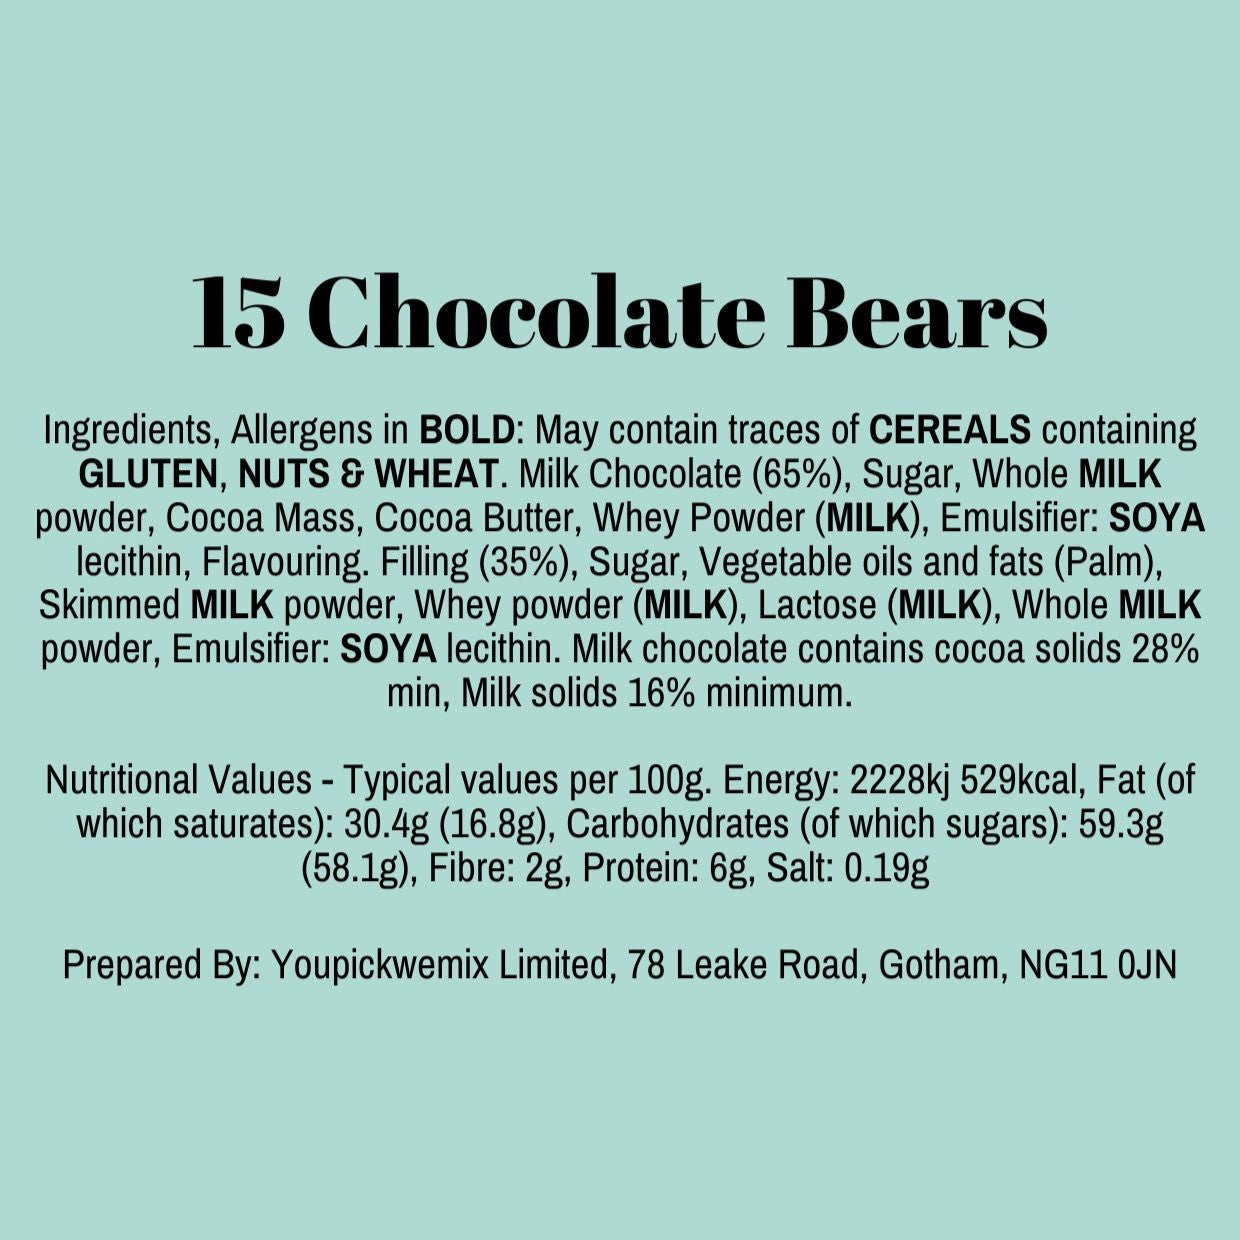 15 Chocolate Bears